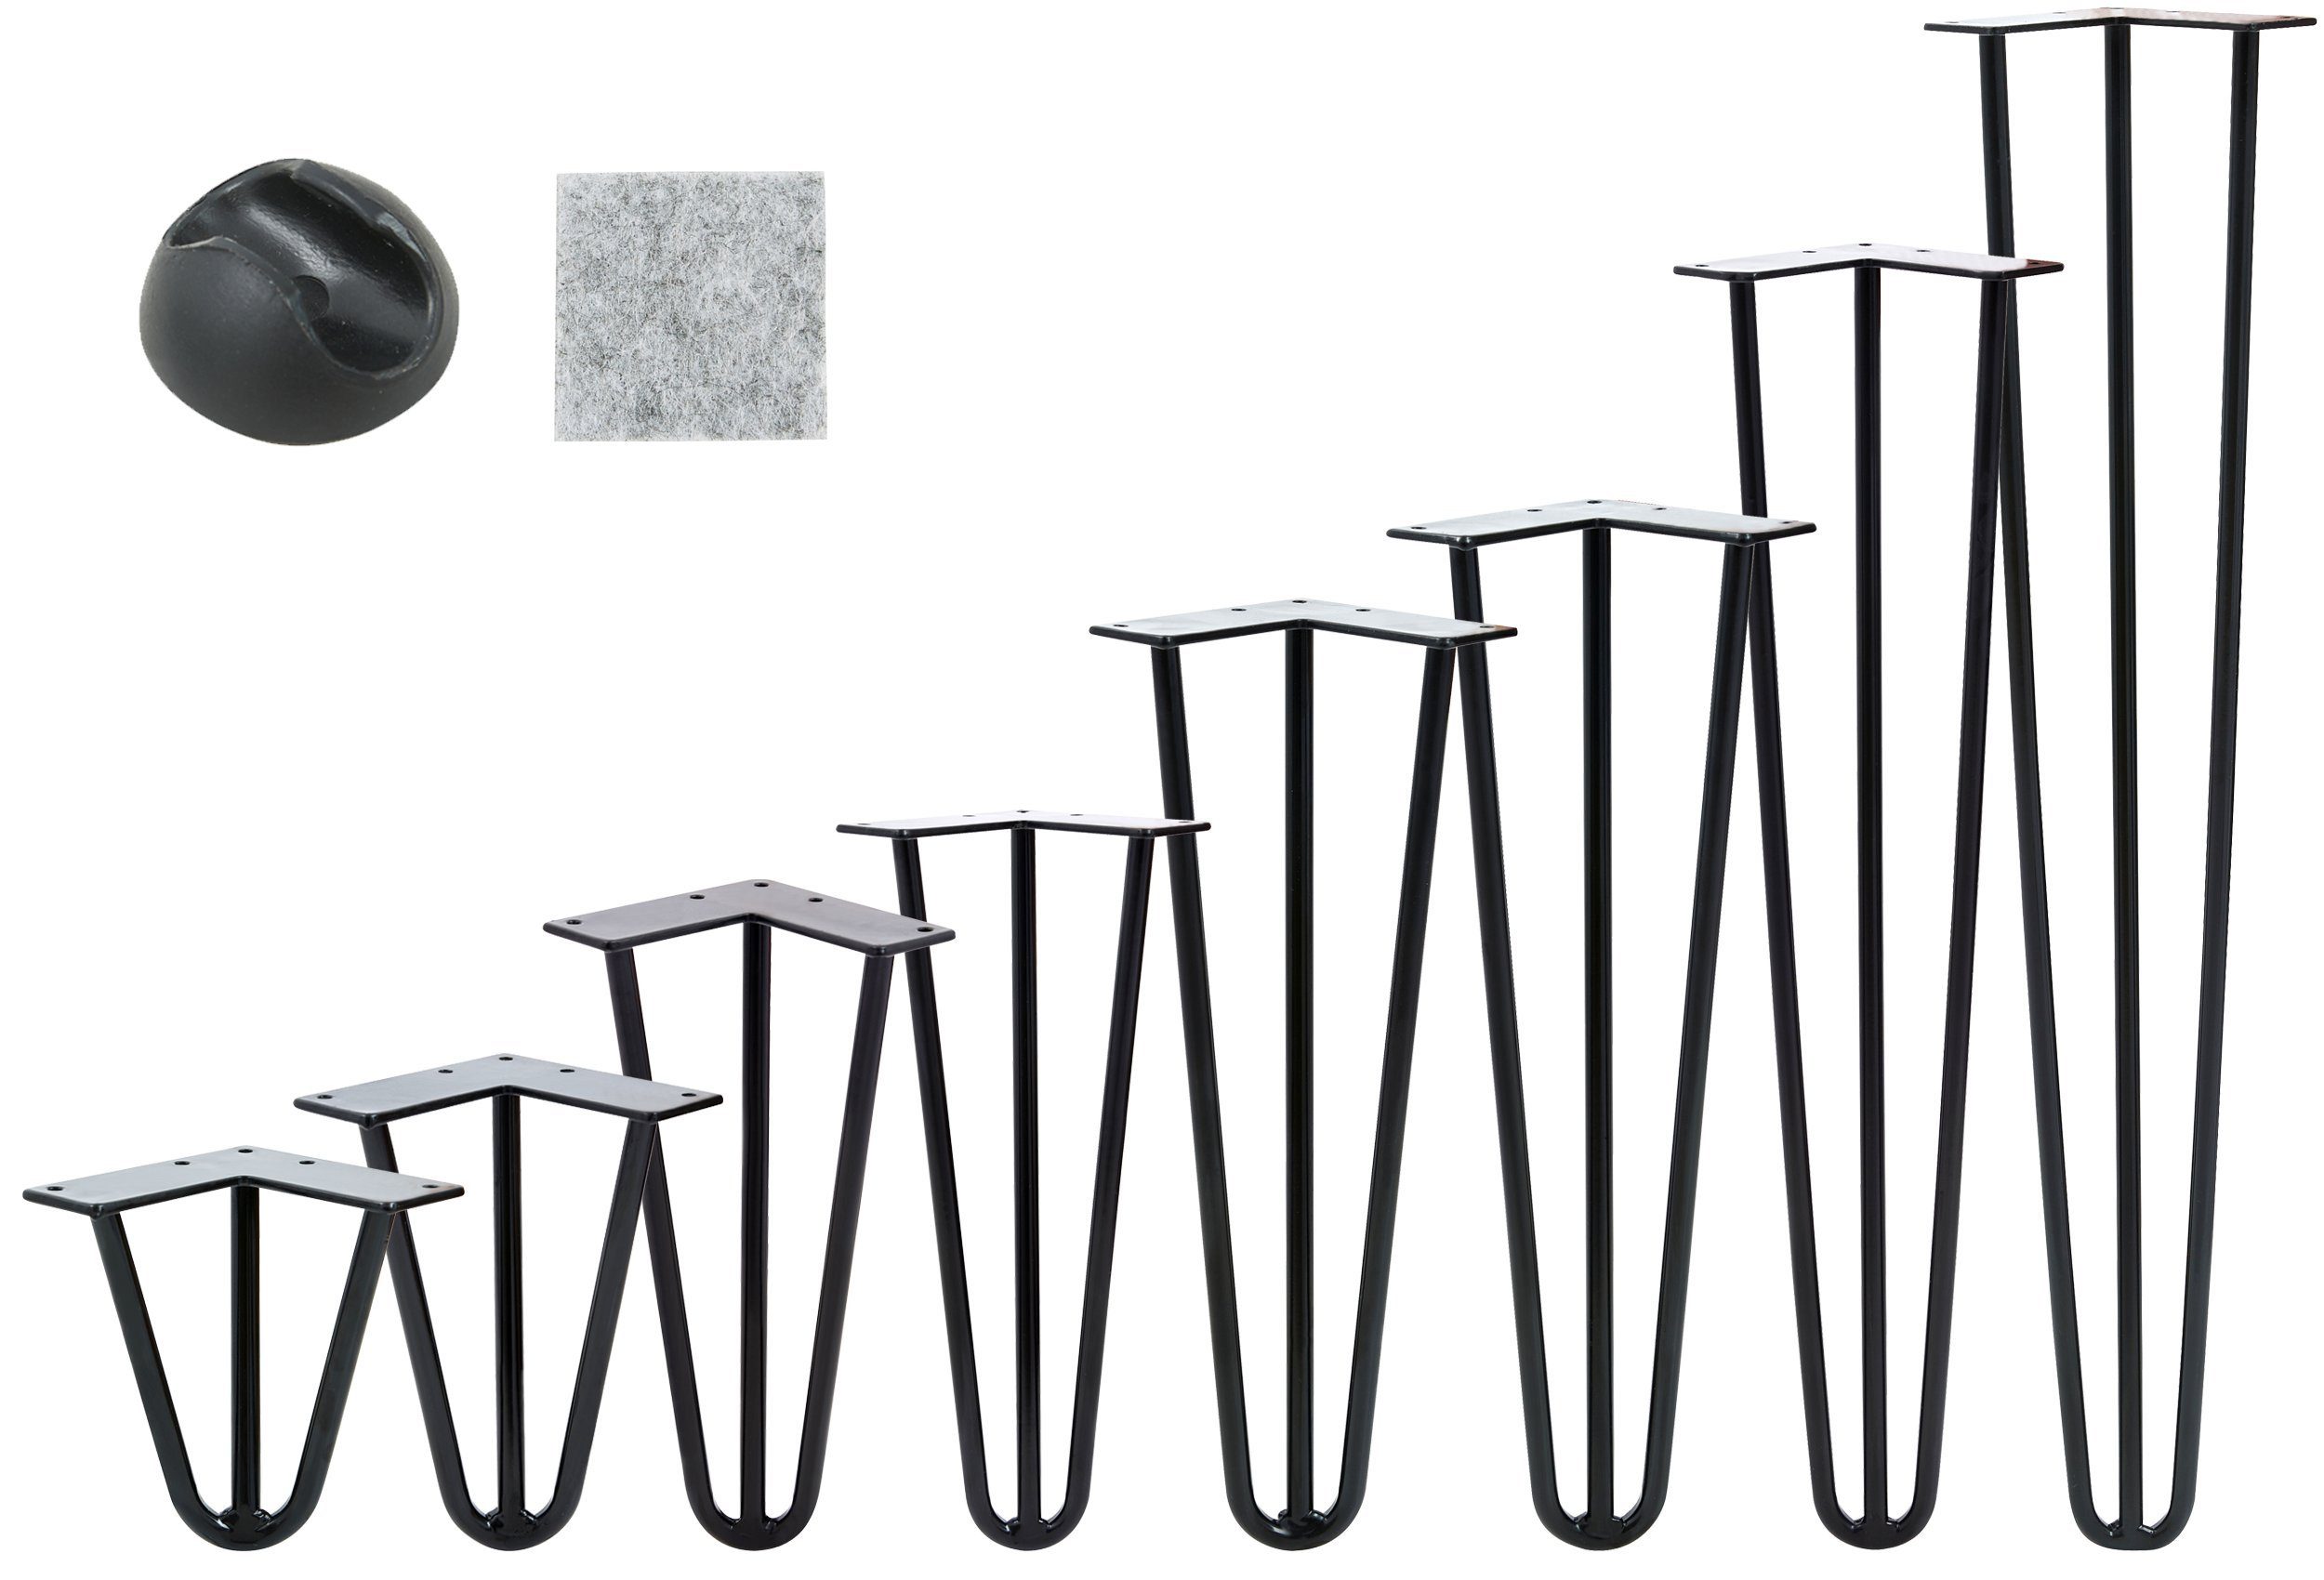 VENDOMNIA Tischbein Hairpin 4er Set, Metall, aus Stahl, 2 oder 3 Streben, Größenwahl, Haarnadel Möbelfüße,Hairpin Legs Tischgestell,Couchtisch, Schreibtisch